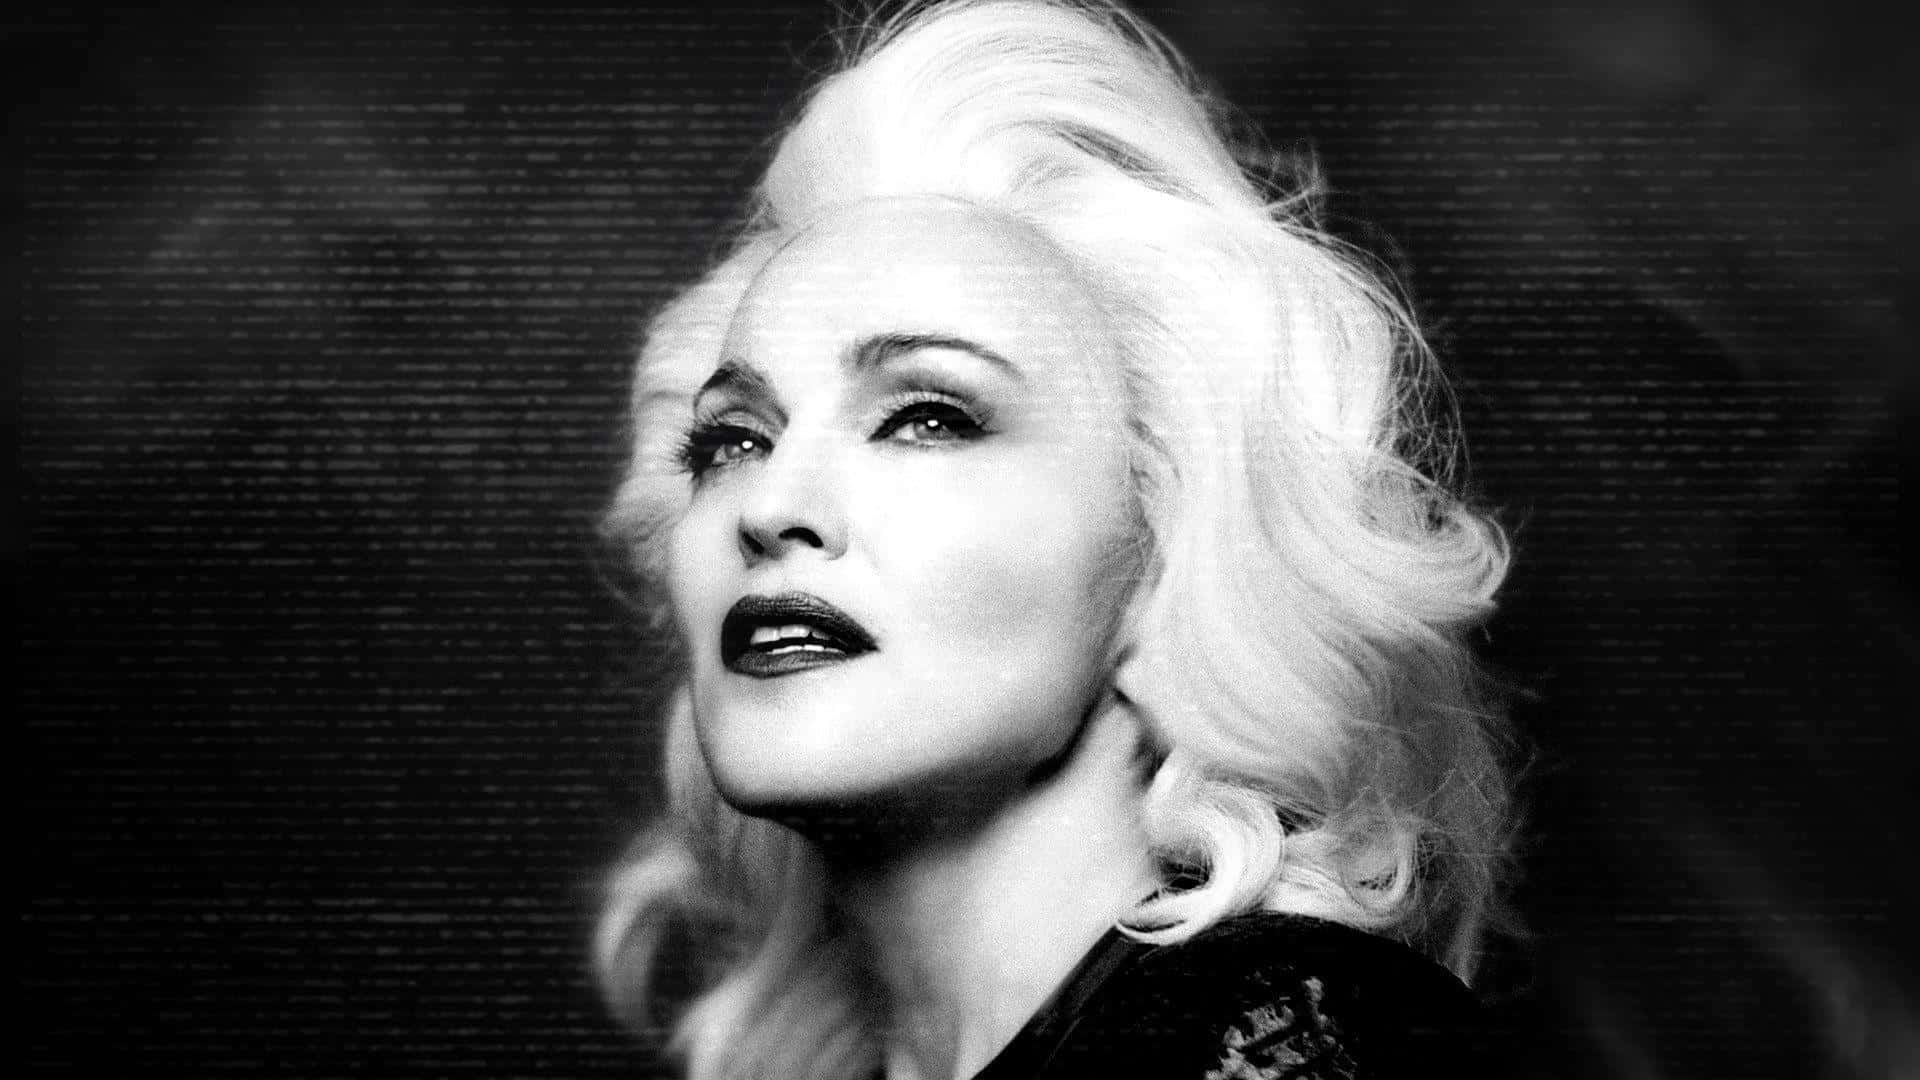 Madonnamit Ihren Ikonischen Blonden Haaren Und Gewagten Outfits.